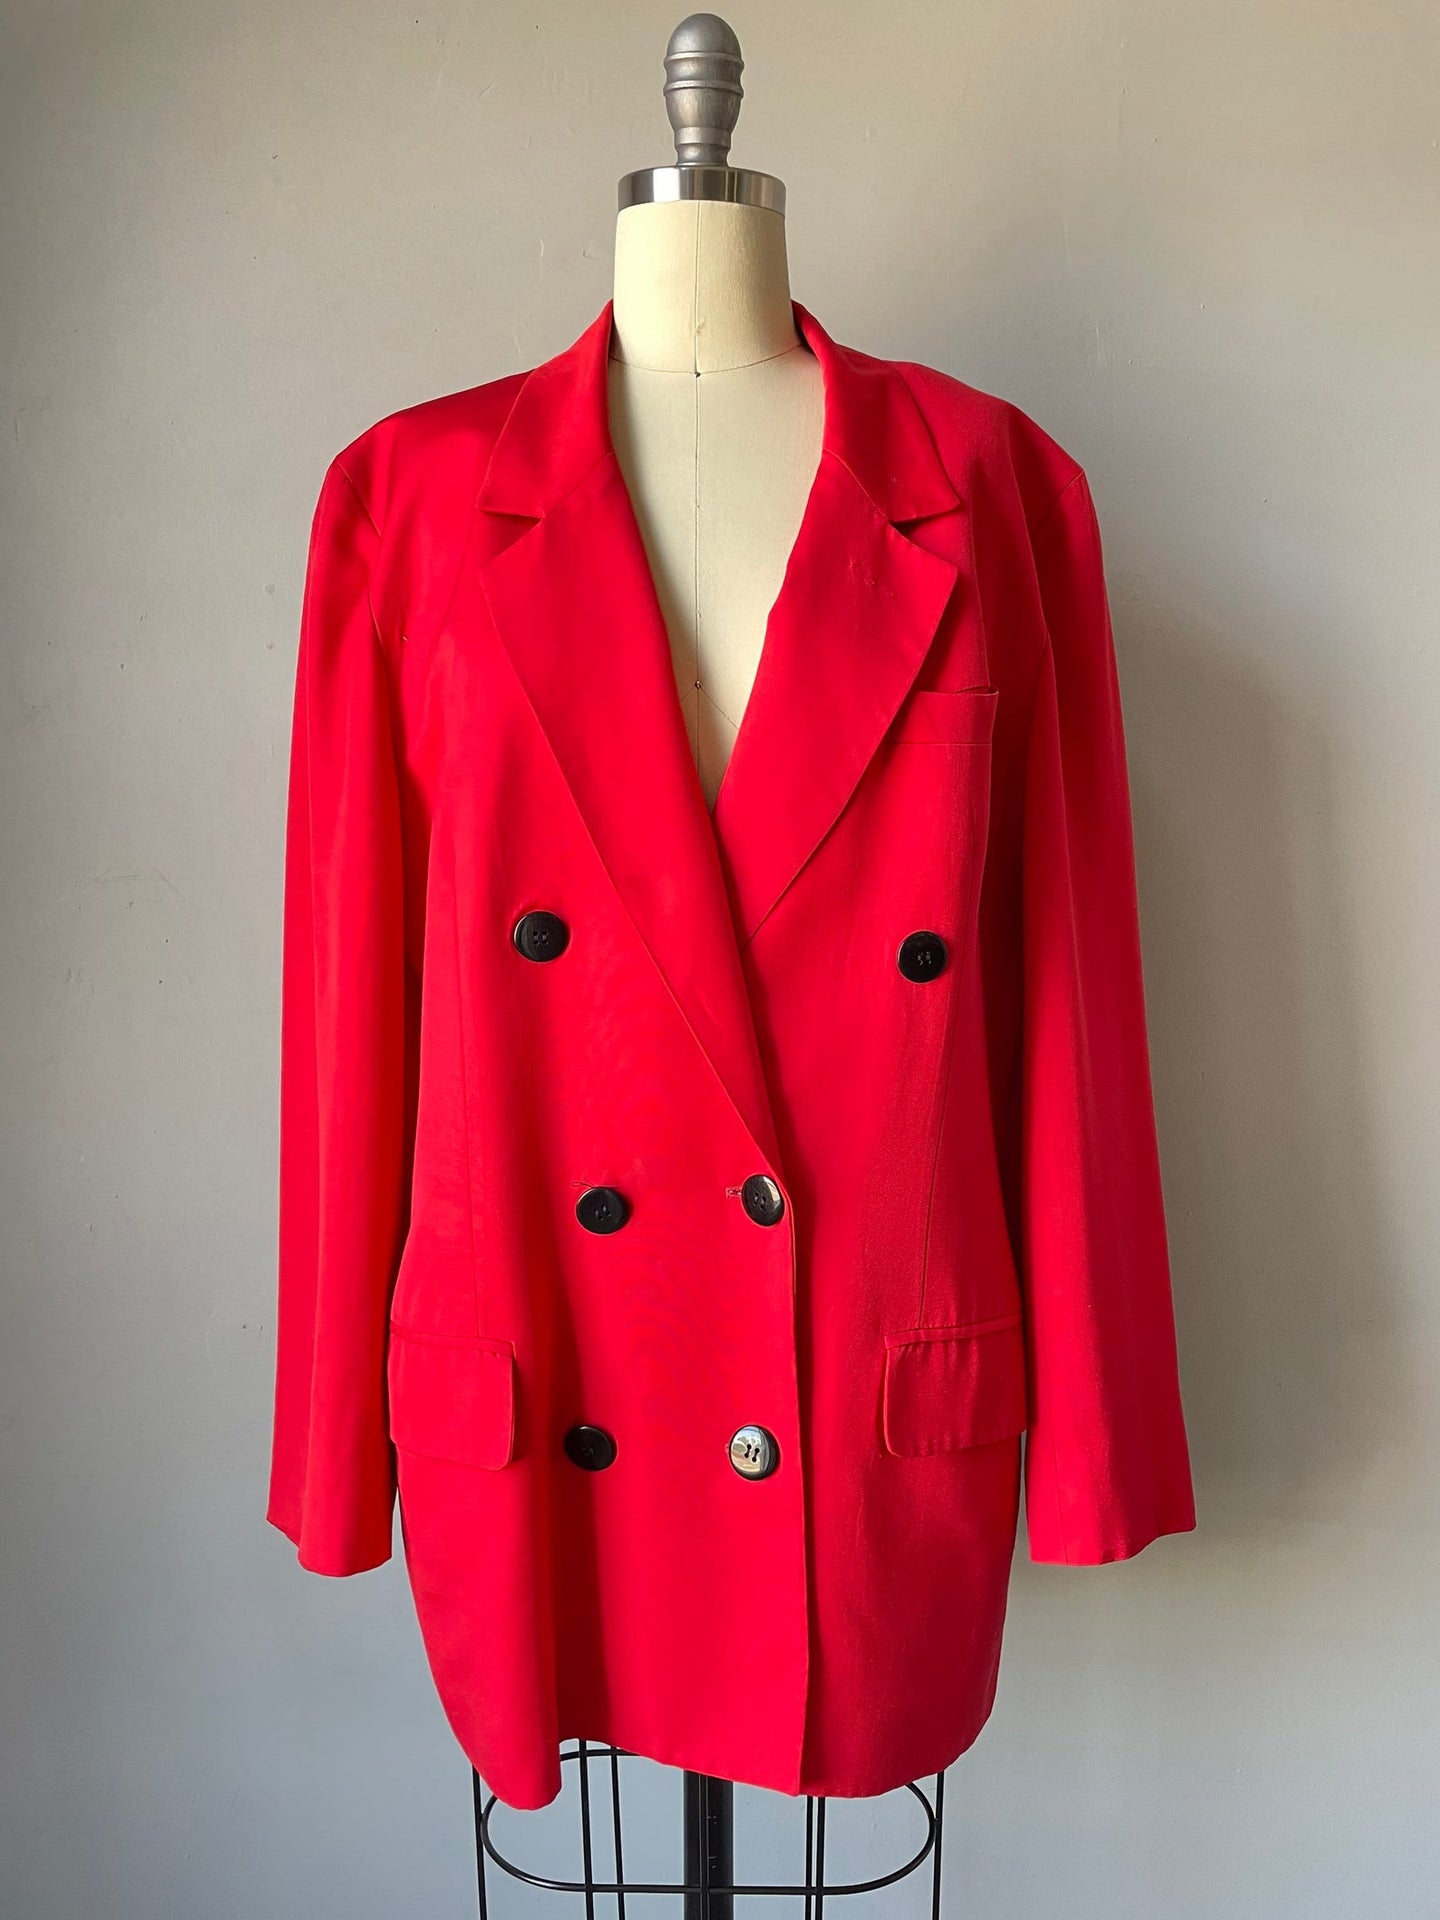 C D Blazer 1990s Red Suit Jacket M